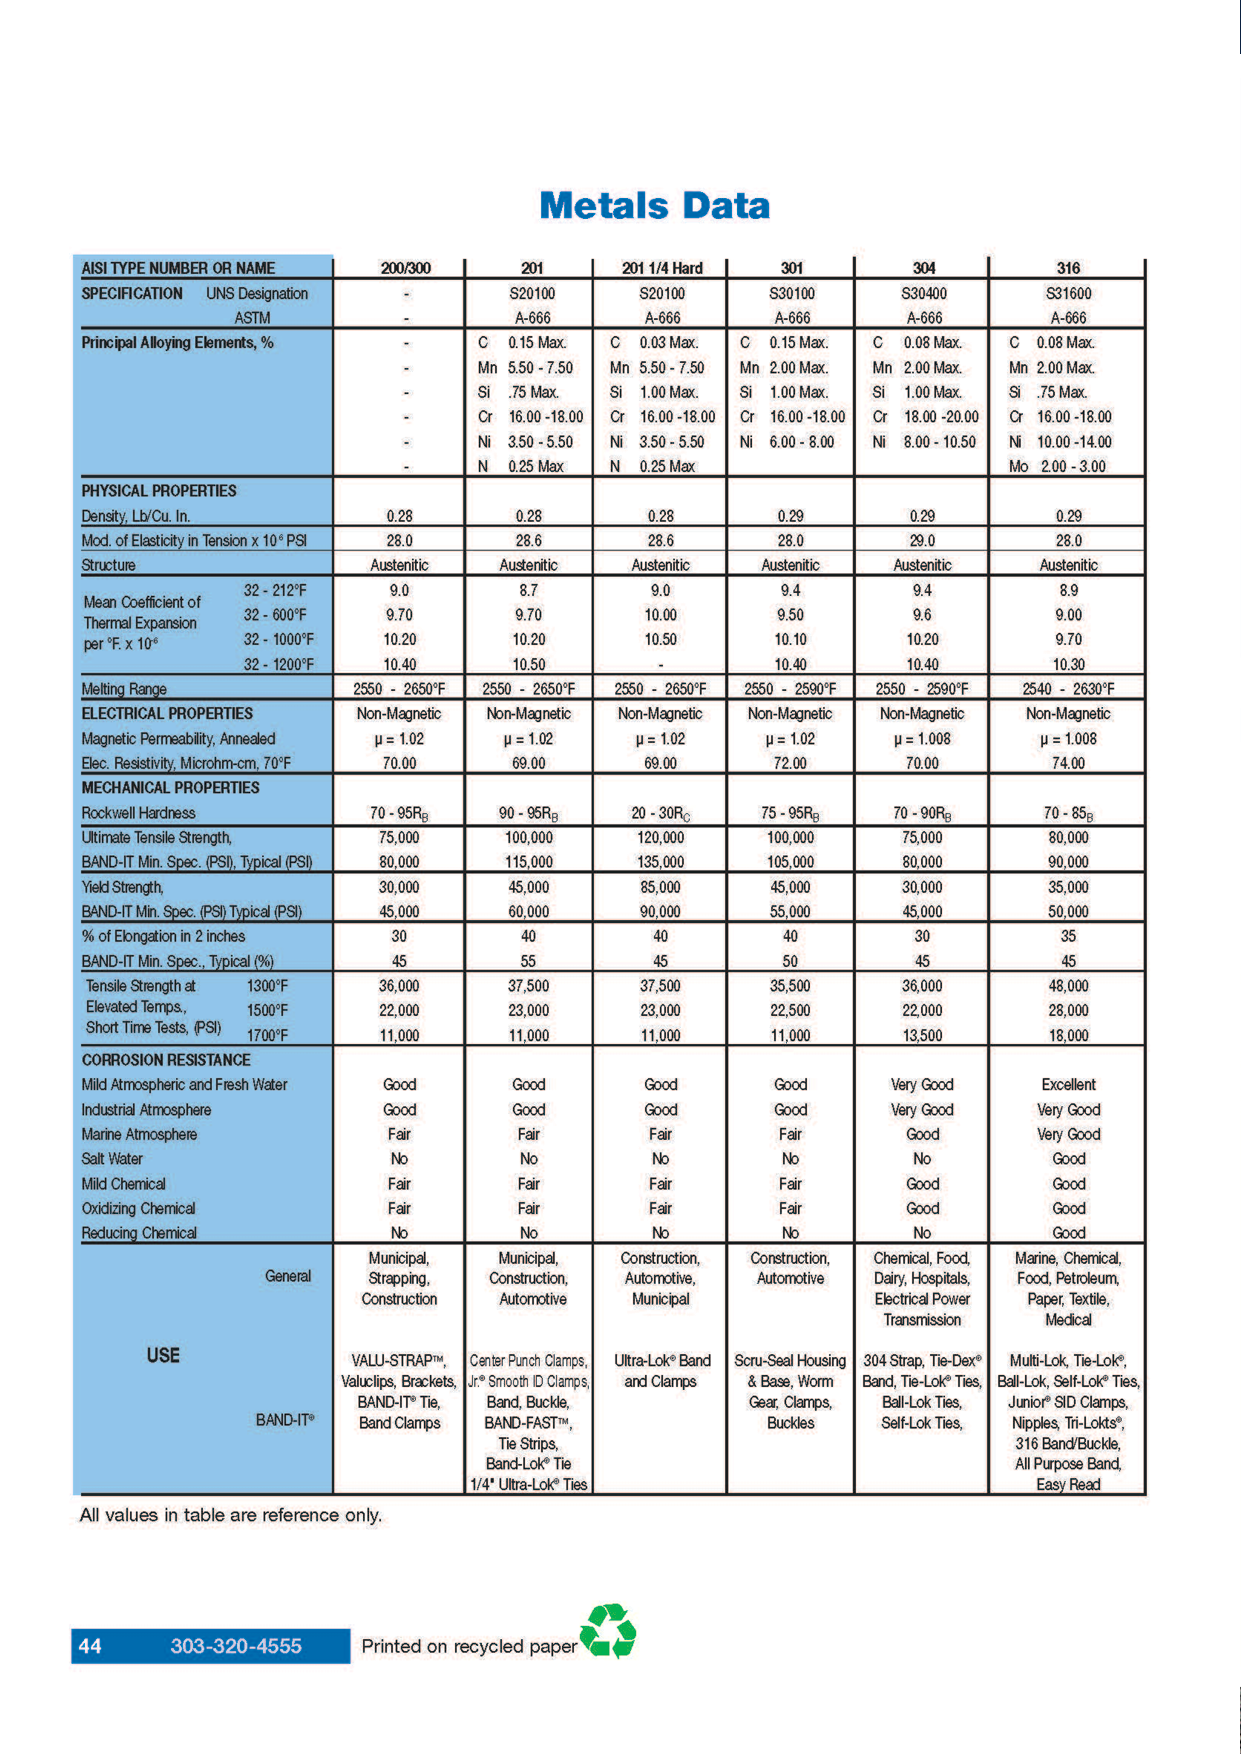 Metals Data Sheet